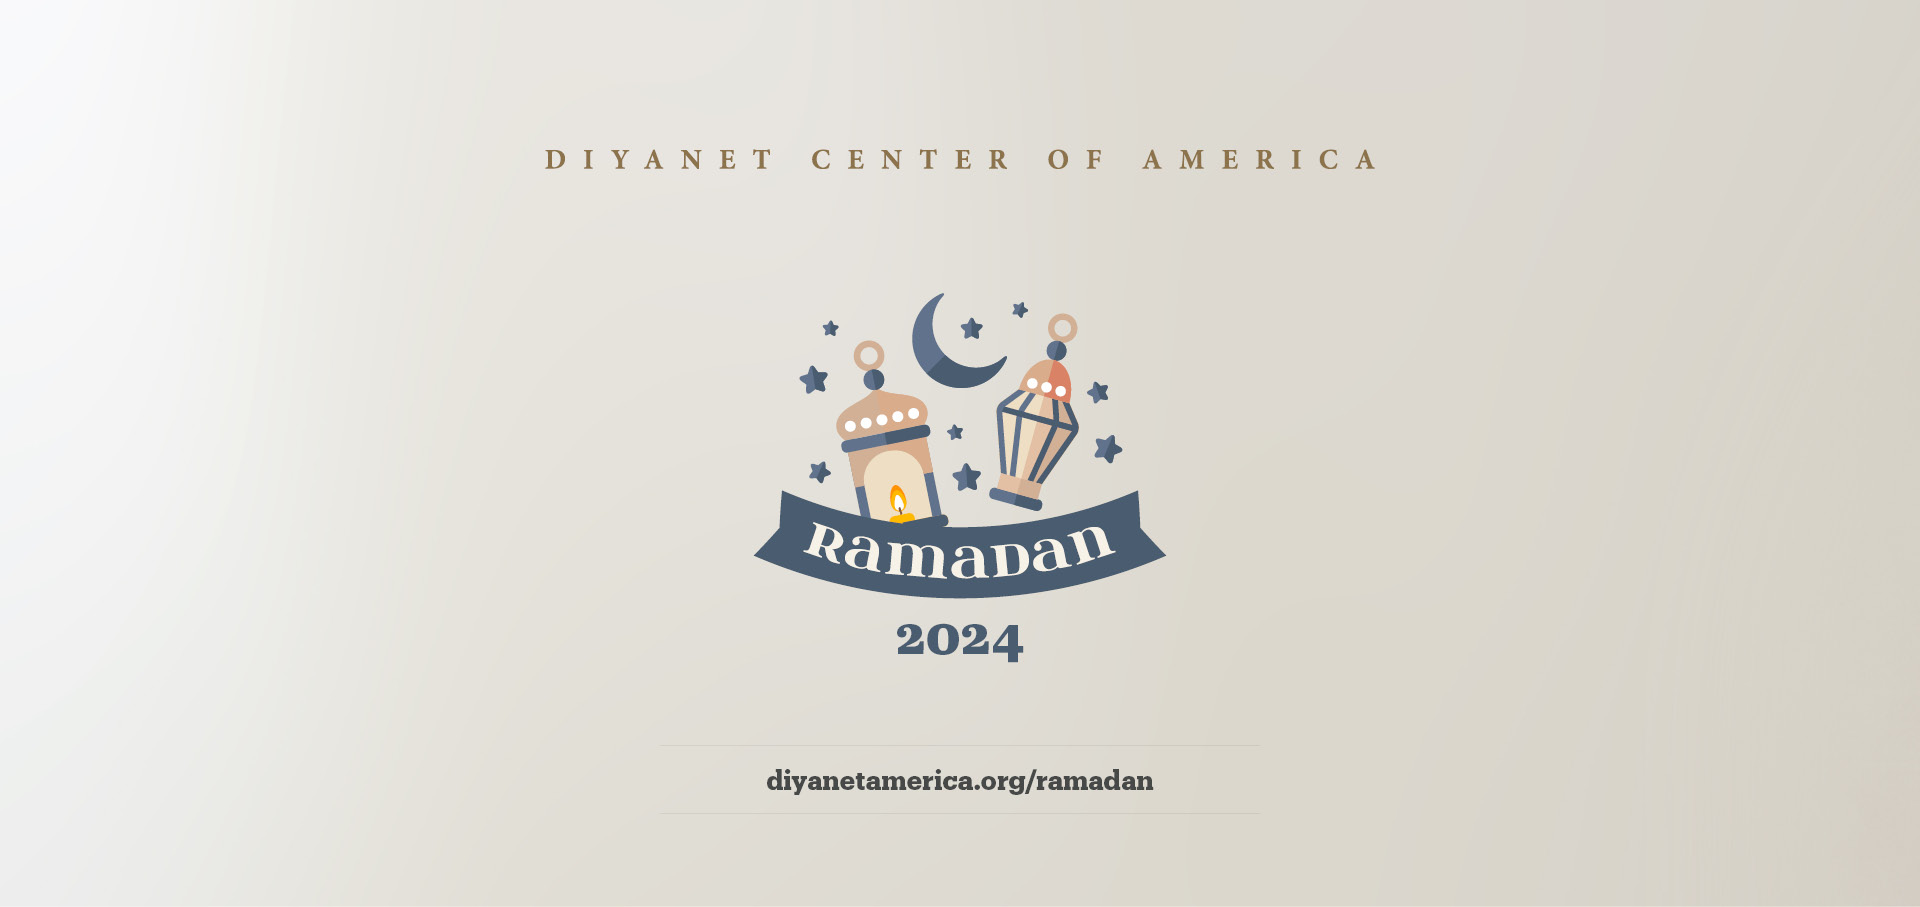 First Day of Ramadan - Ramadan 2024